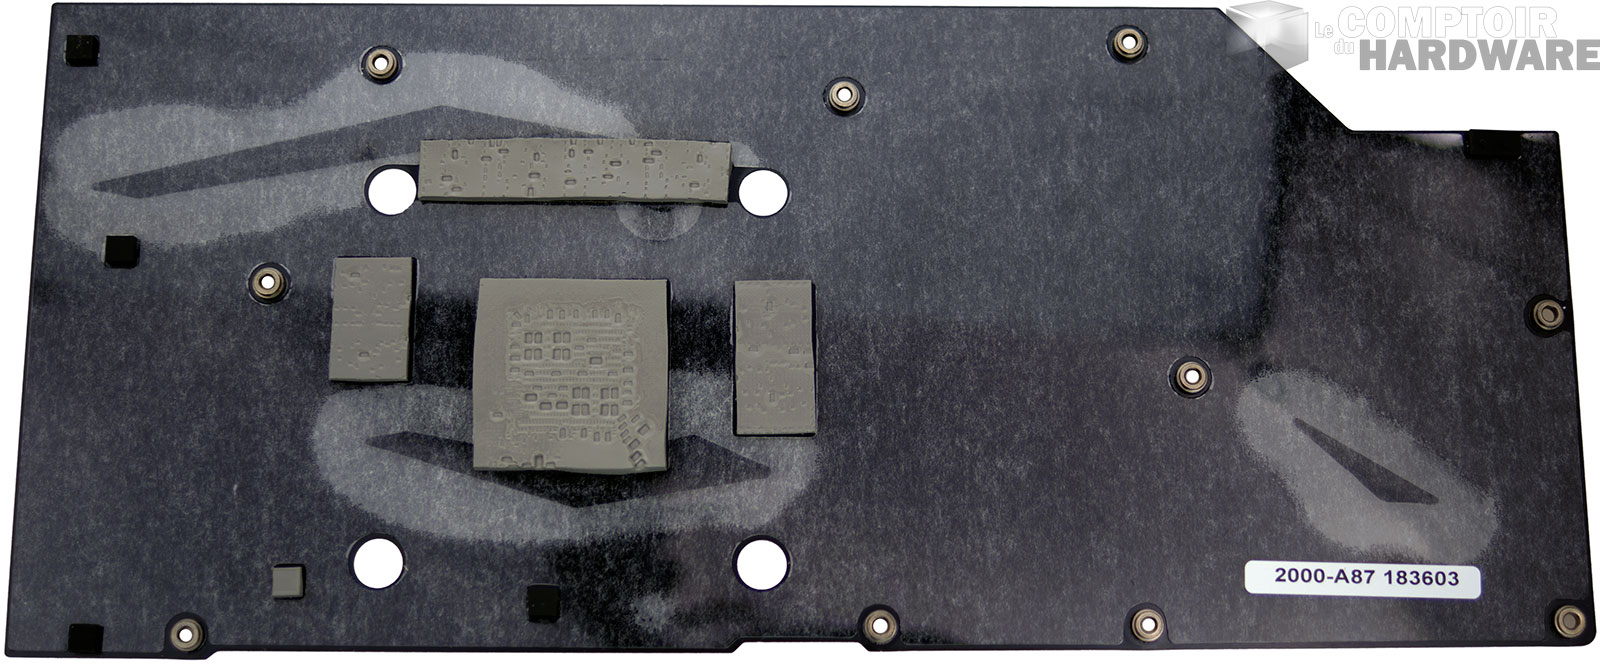 MSI RTX 2070 ARMOR : plaque arrière